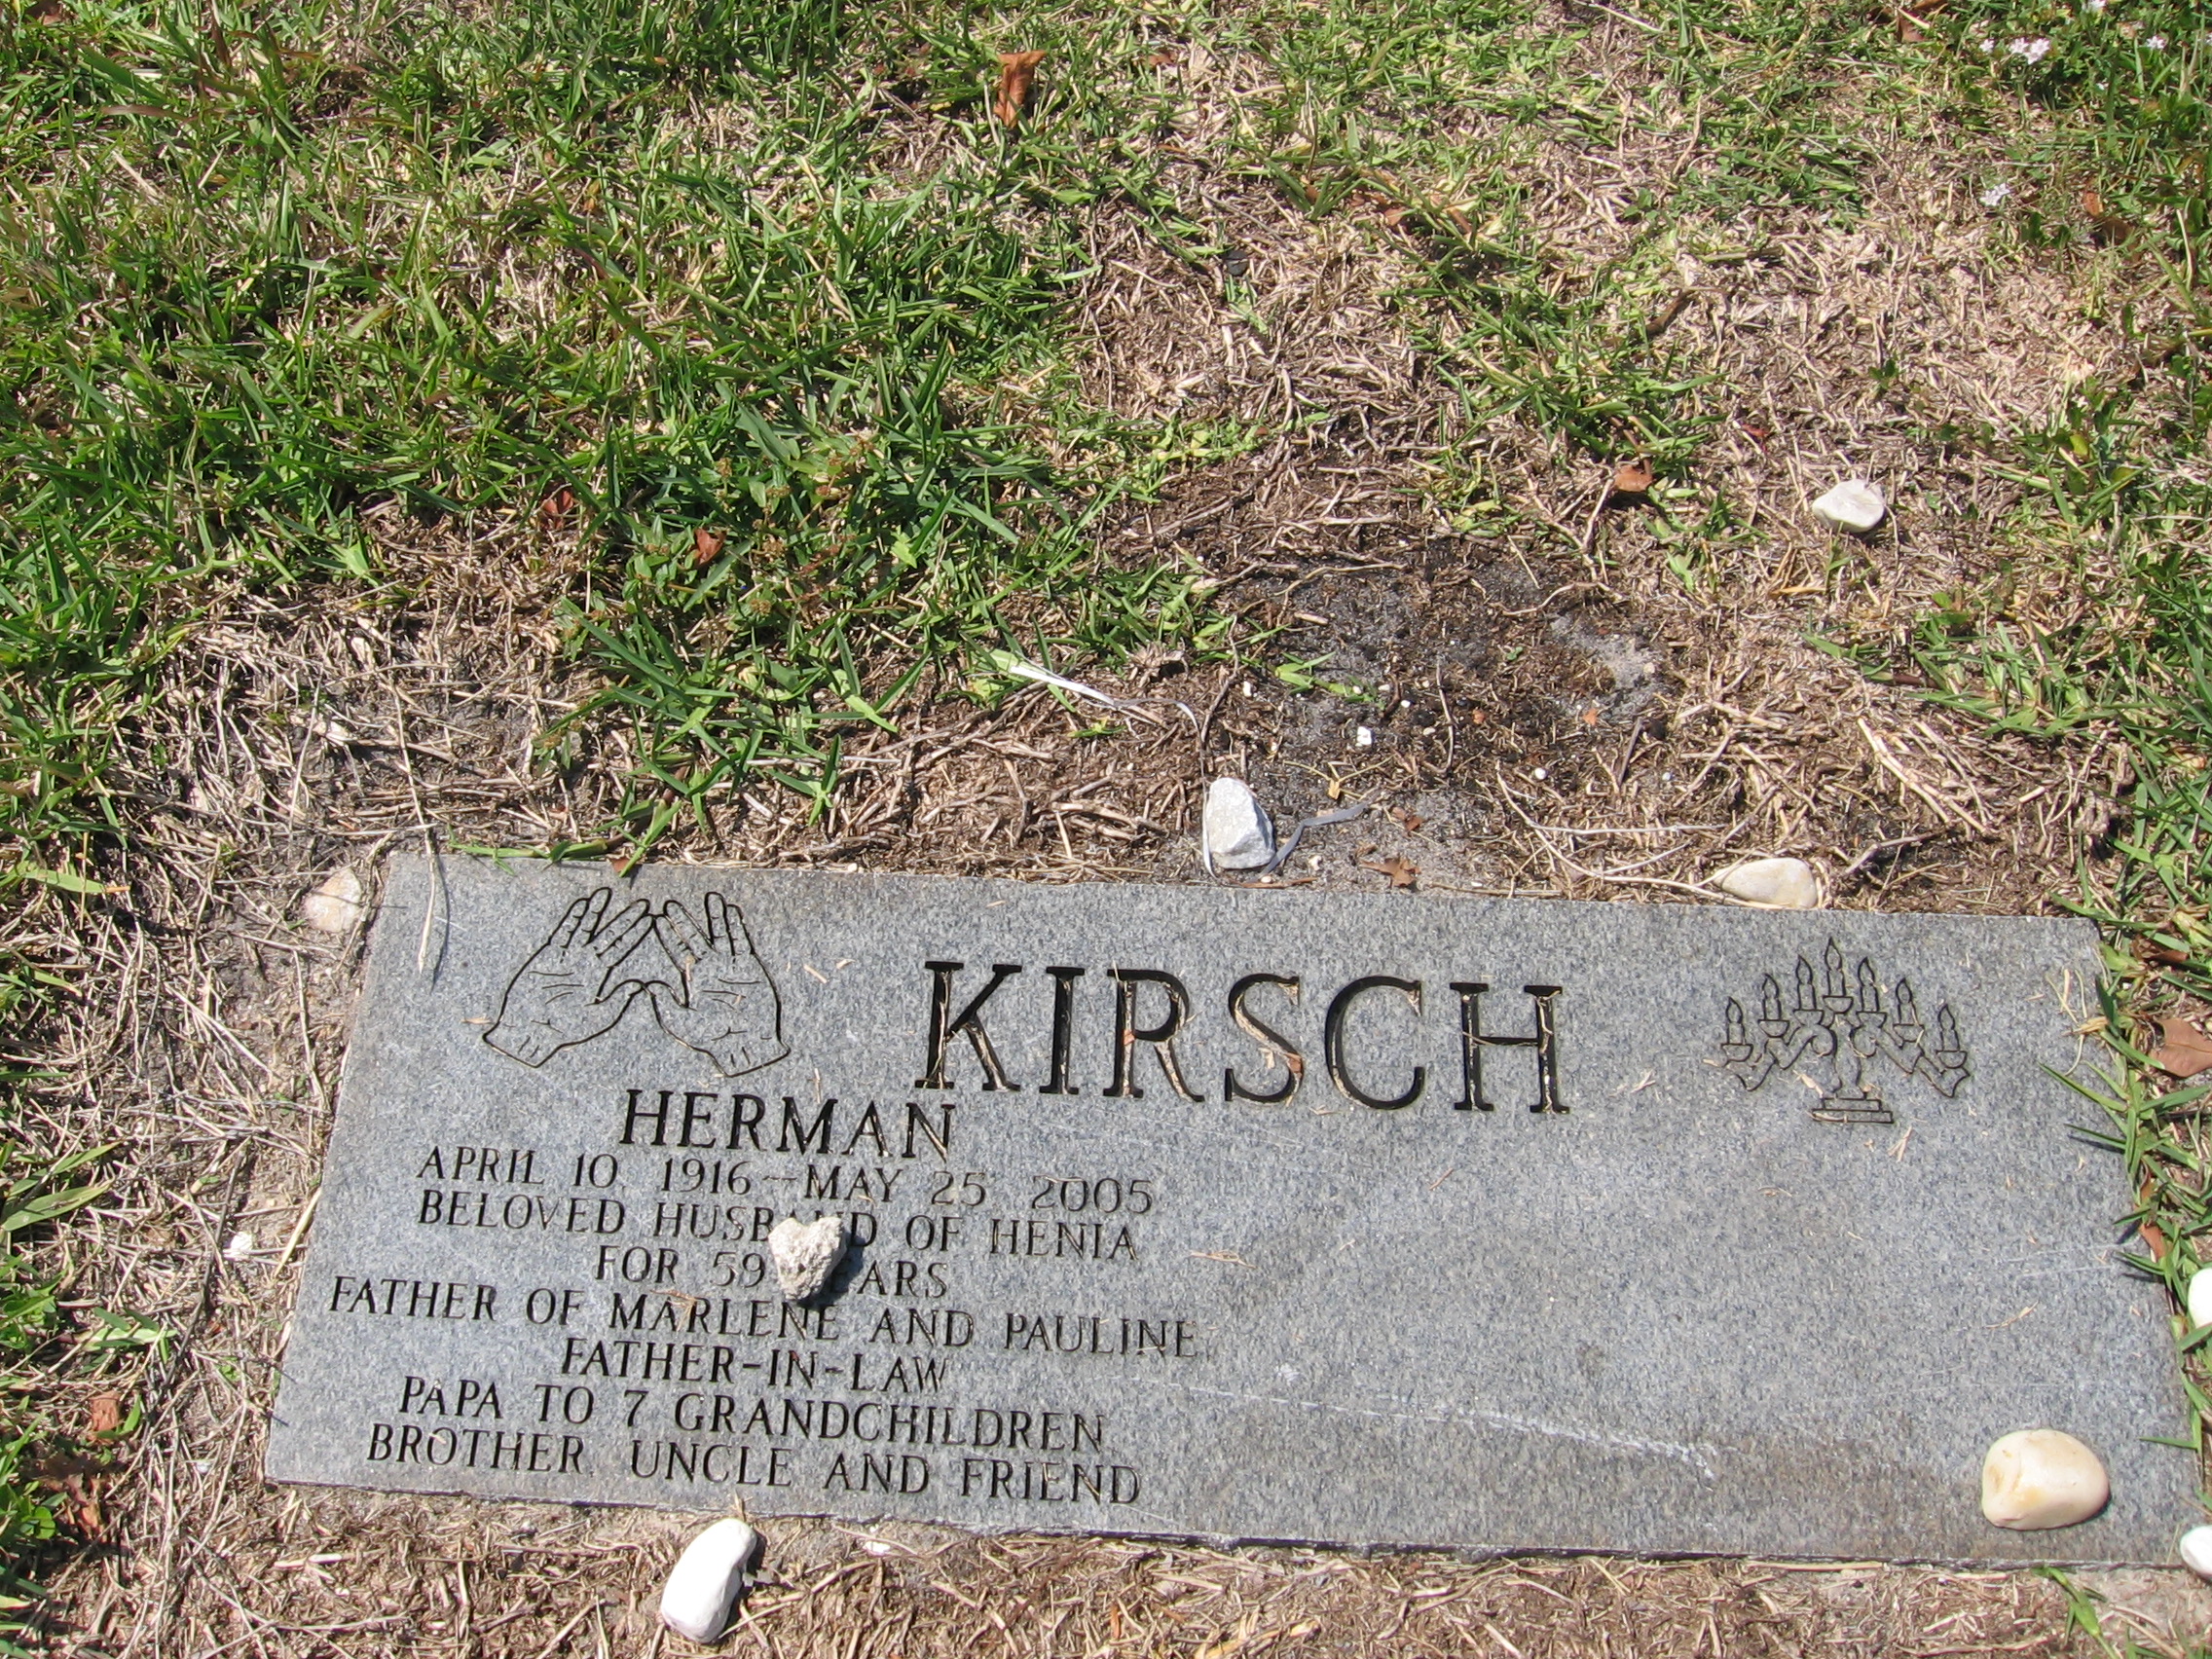 Herman Kirsch